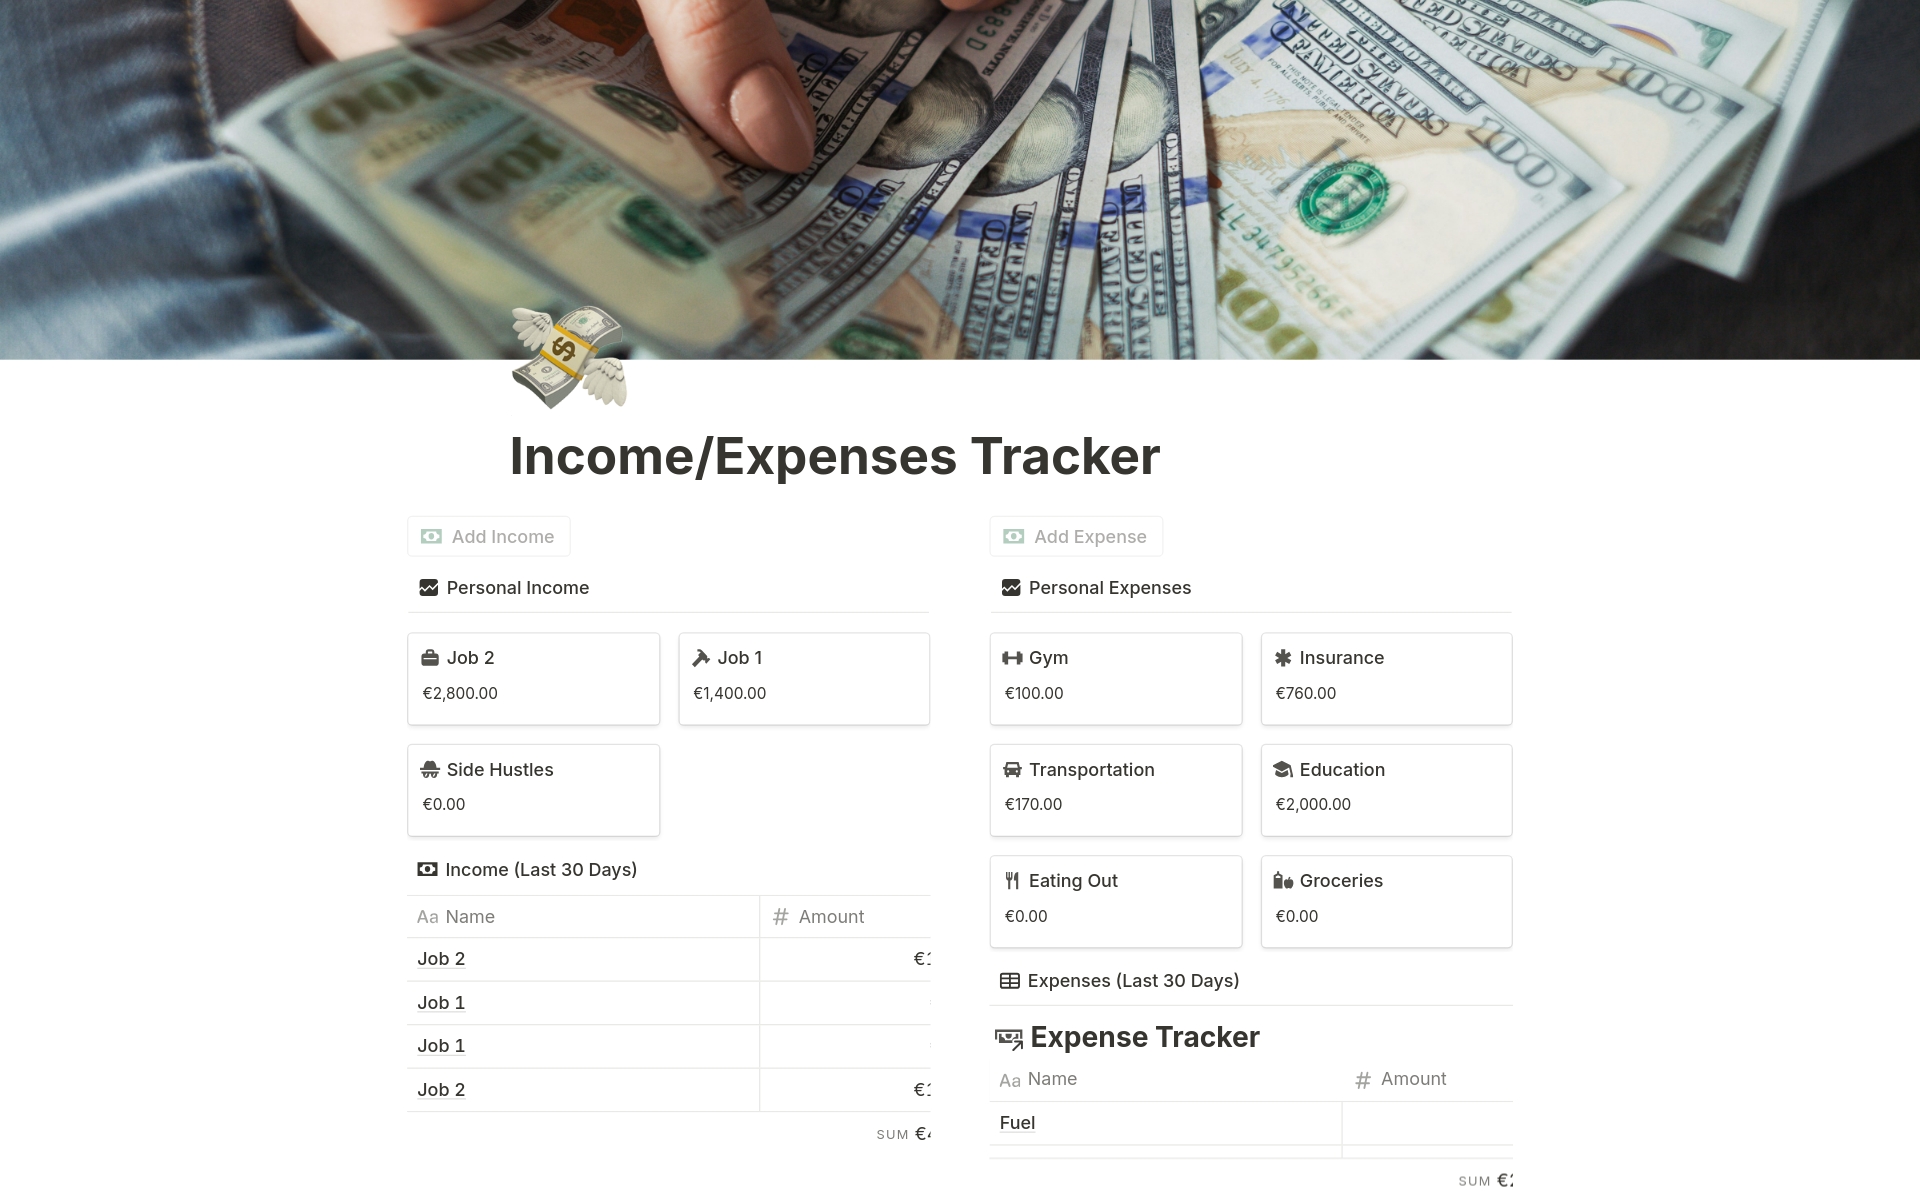 Uma prévia do modelo para Income/Expenses Tracker